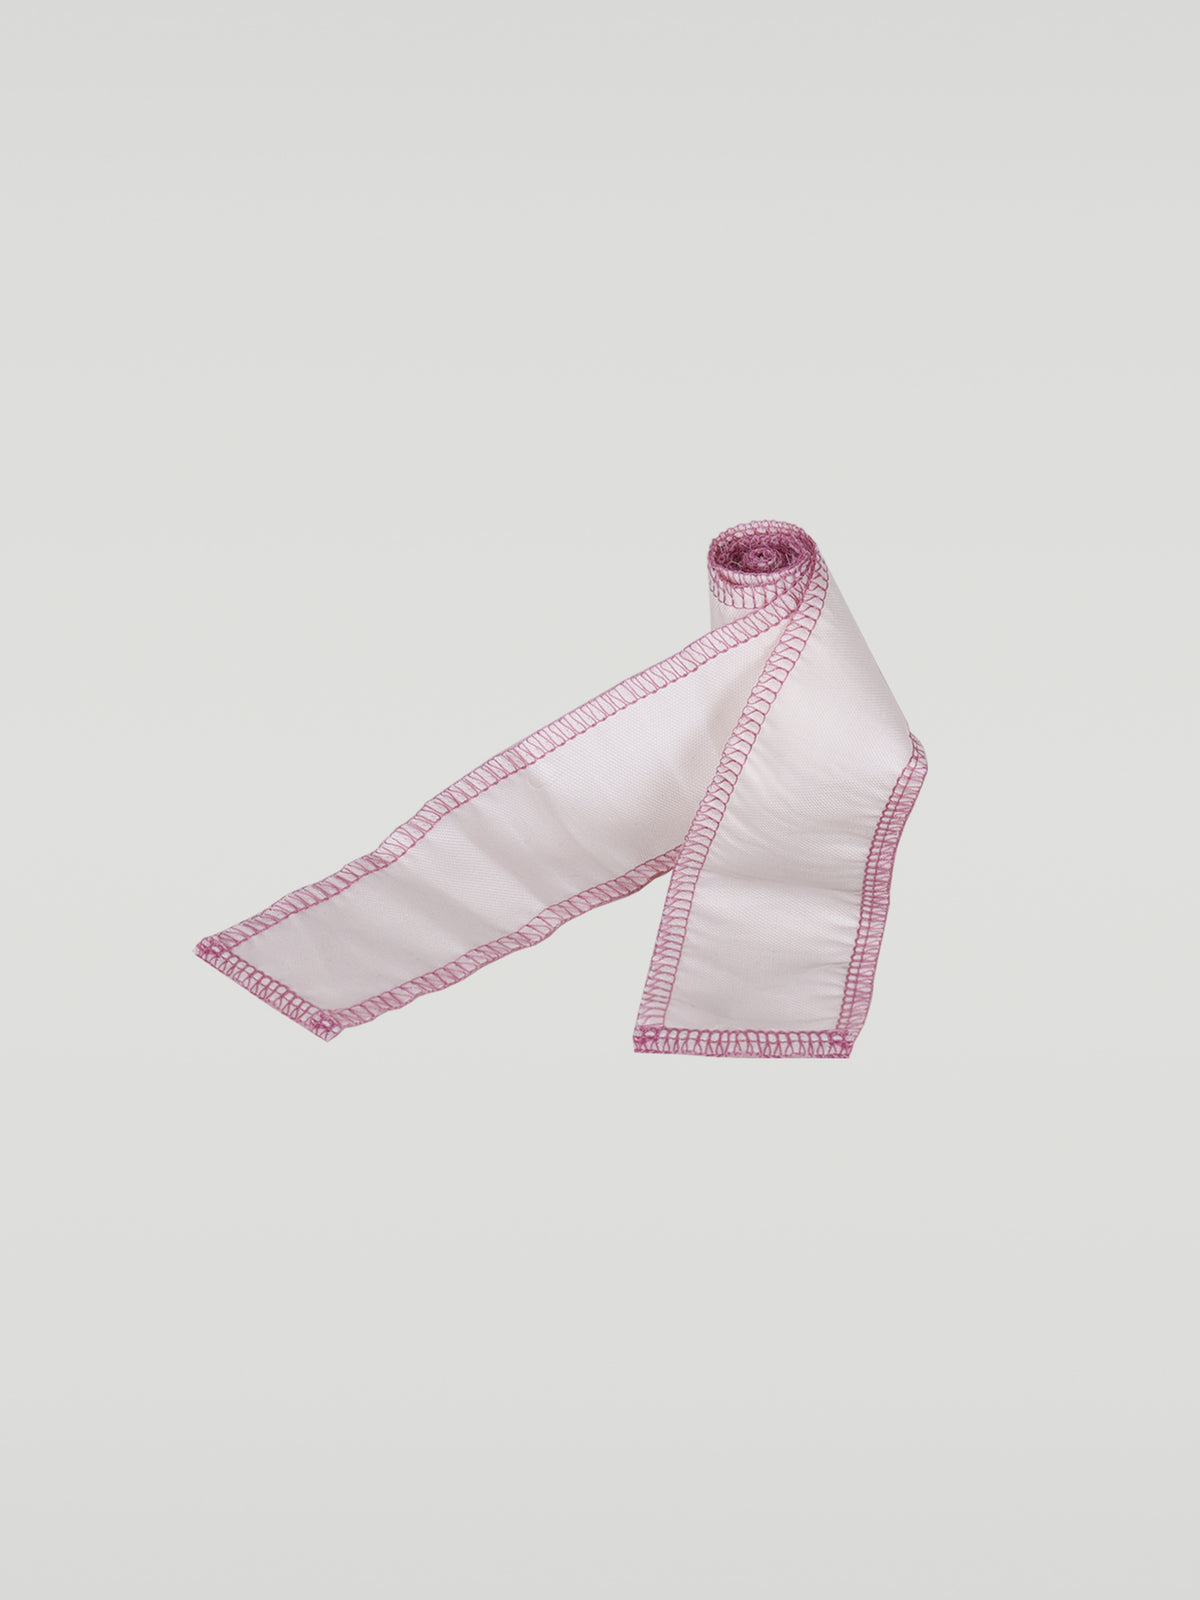 Serged Ribbon Lace - Pink